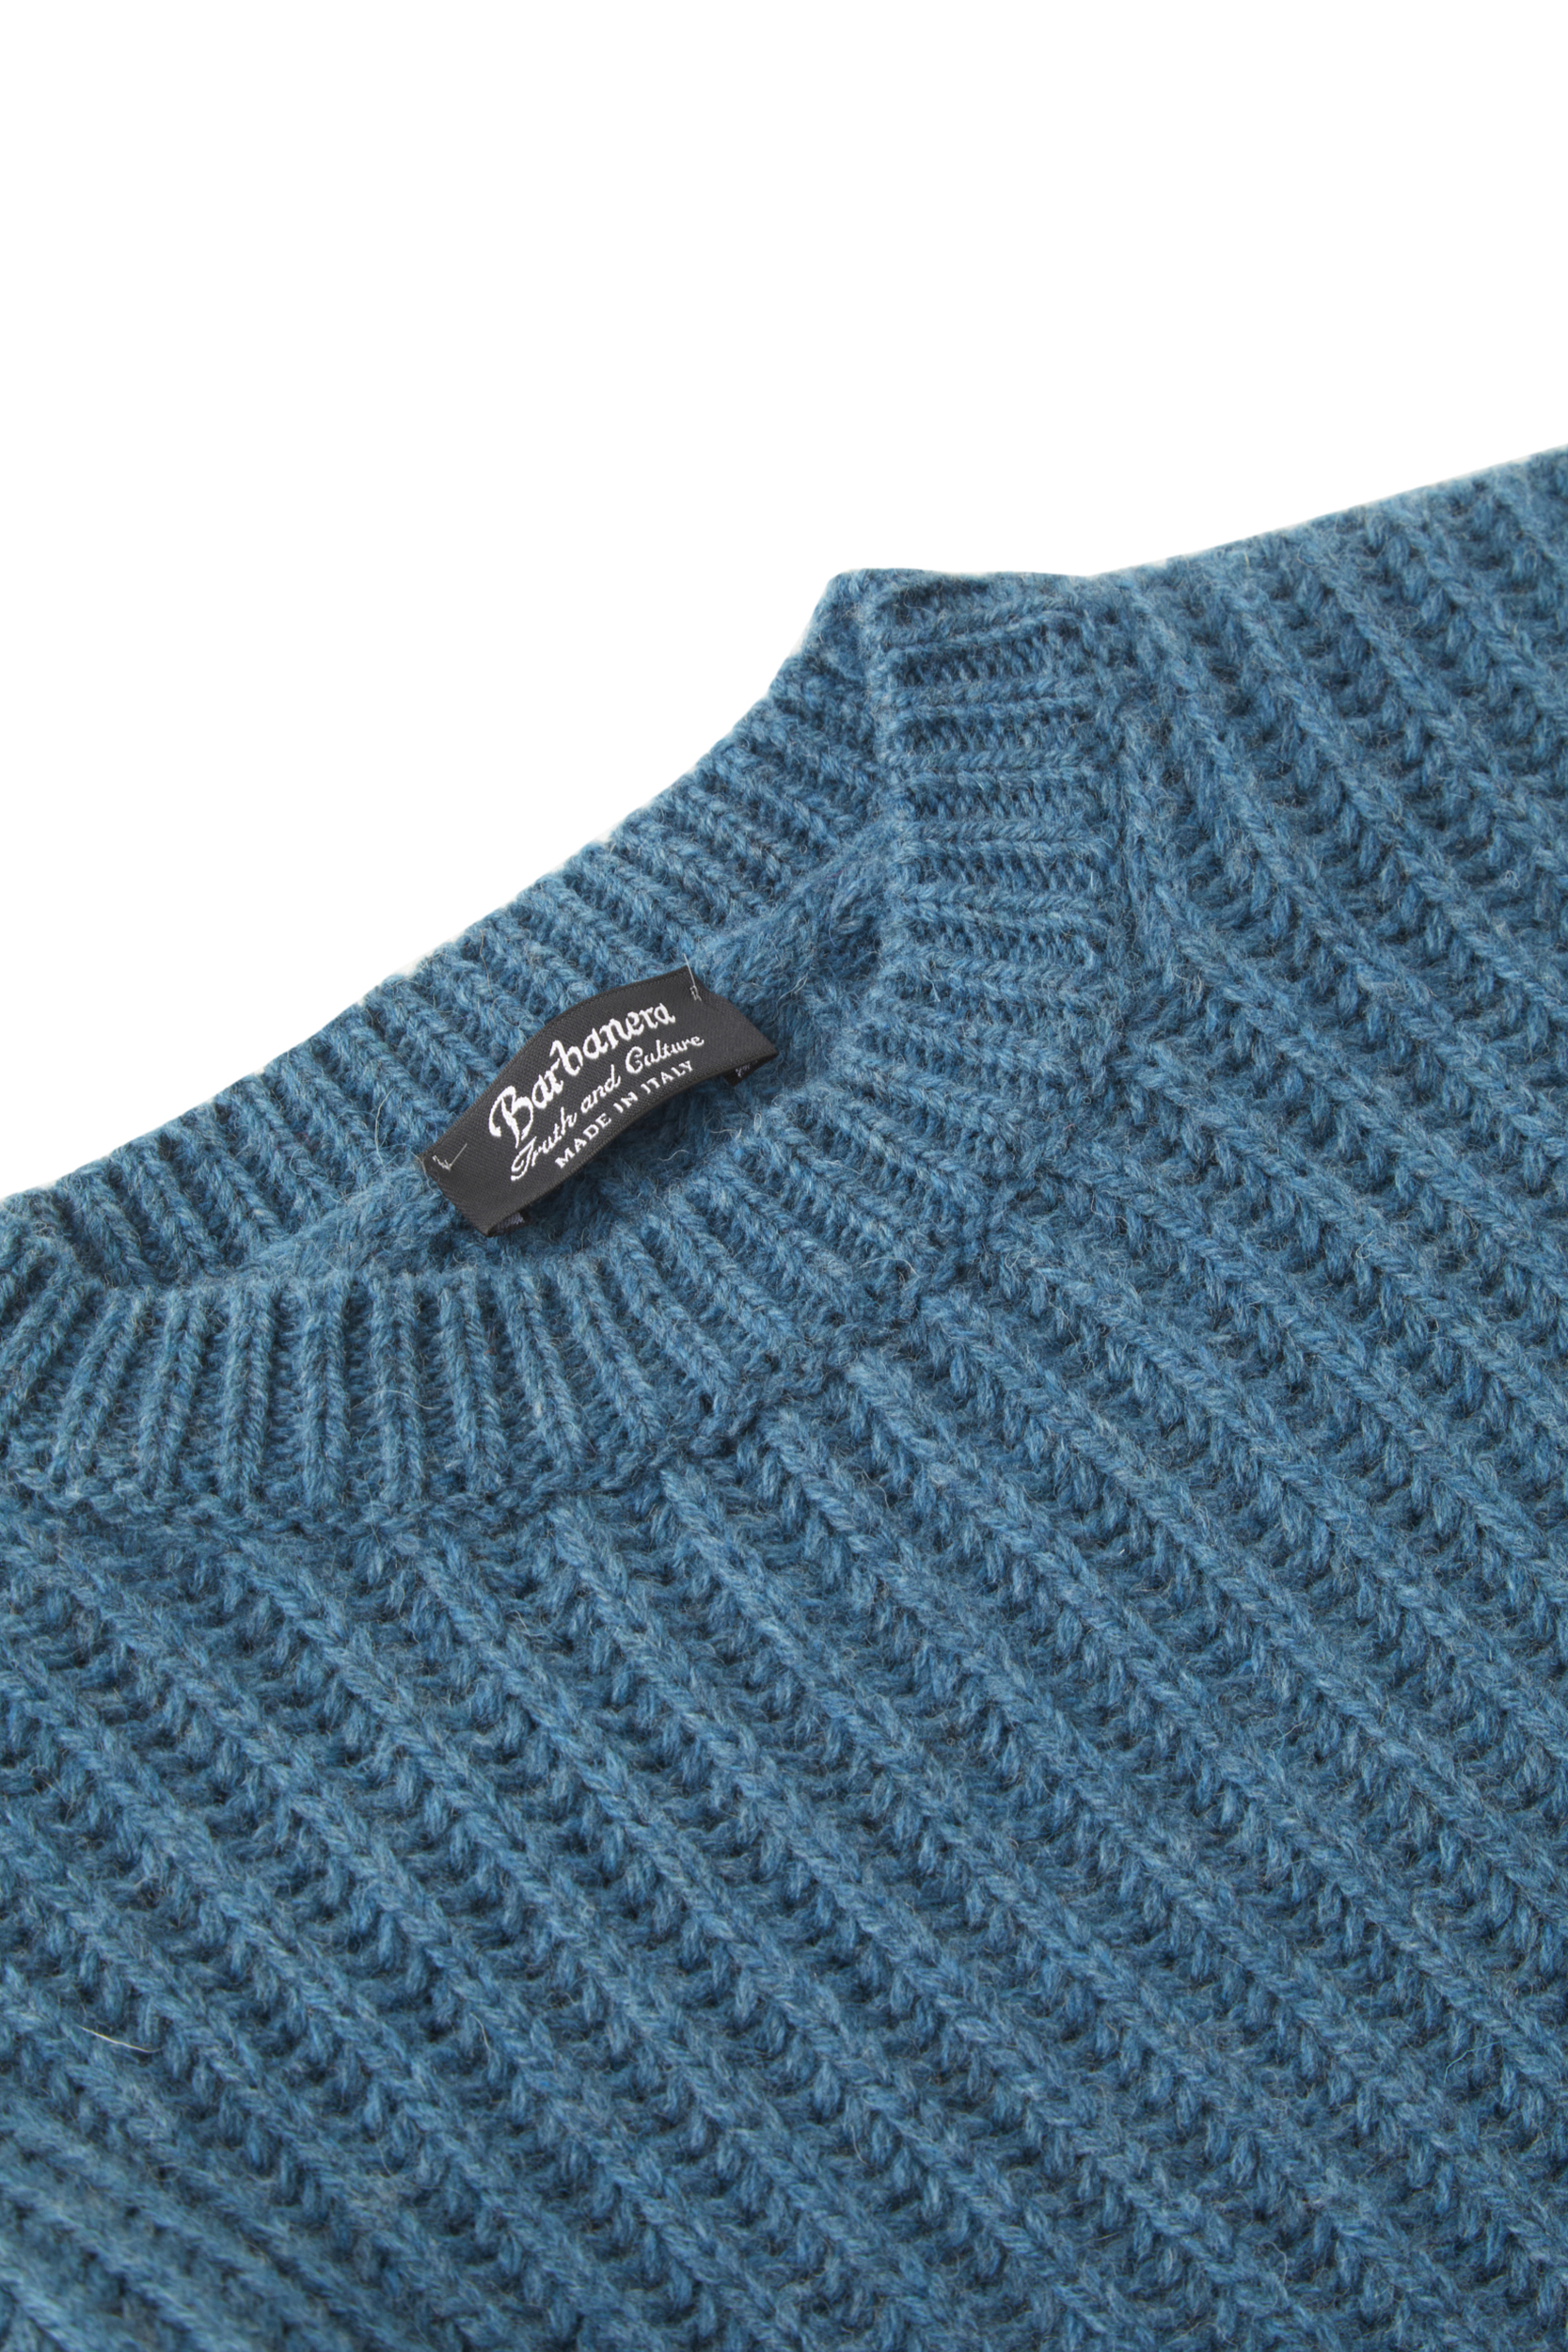 Alfredo Teal Blue Merino Wool English Rib Sweater - Barbanera